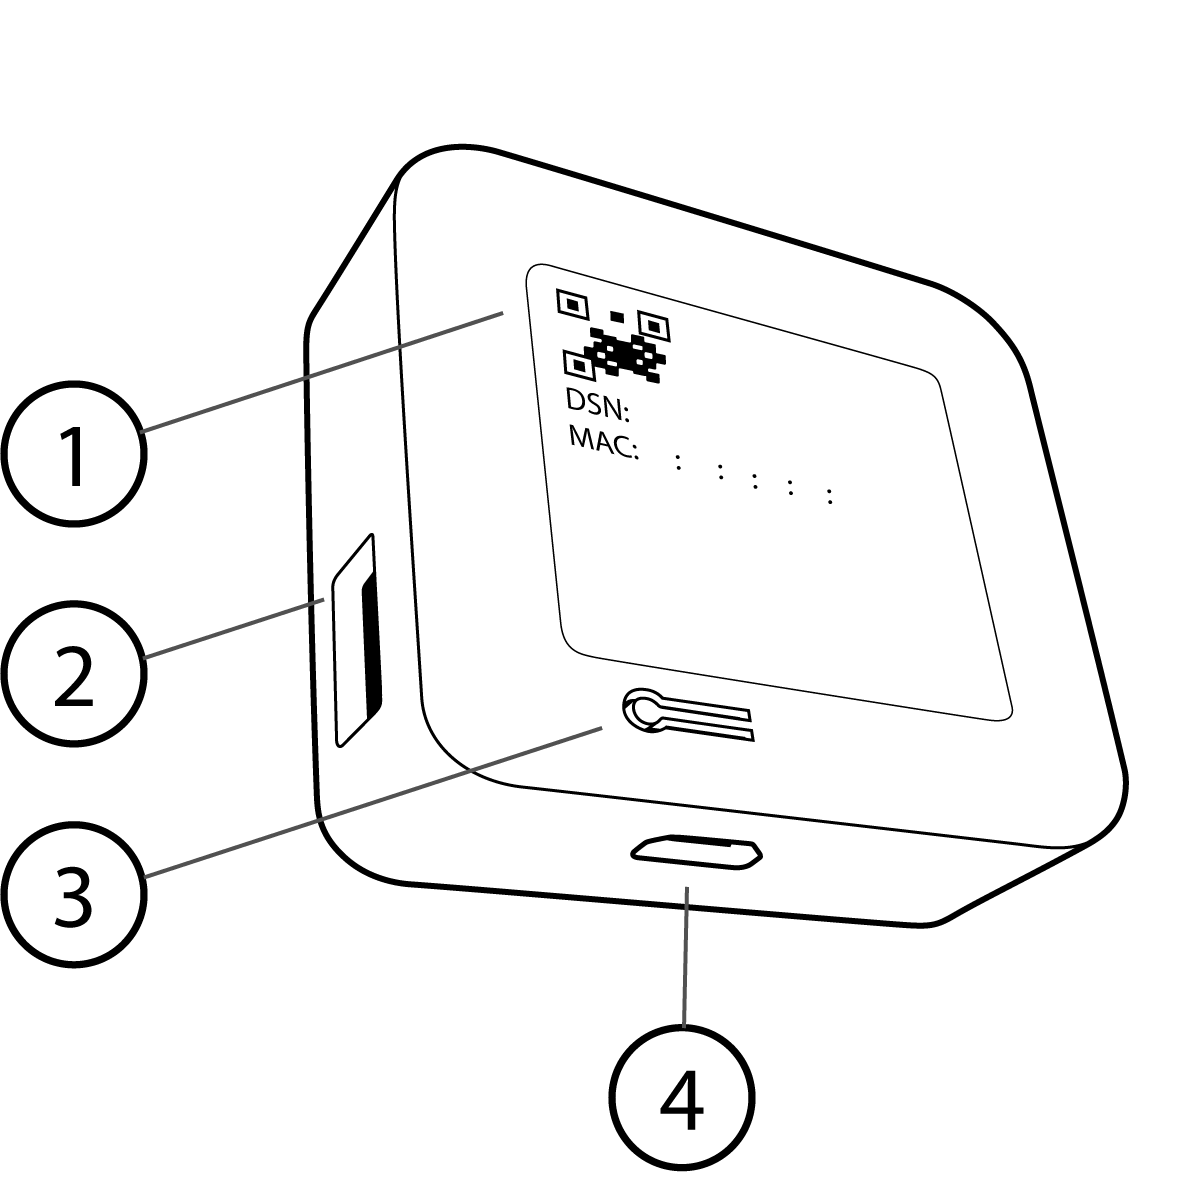 image de l'arrière d'un module de synchronisation 2 montrant le code qr du numéro de série, le port USB-A pour un lecteur jusqu'à 256 gigaoctets, le bouton de réinitialisation à l'arrière du module de synchronisation et le port d'alimentation micro USB